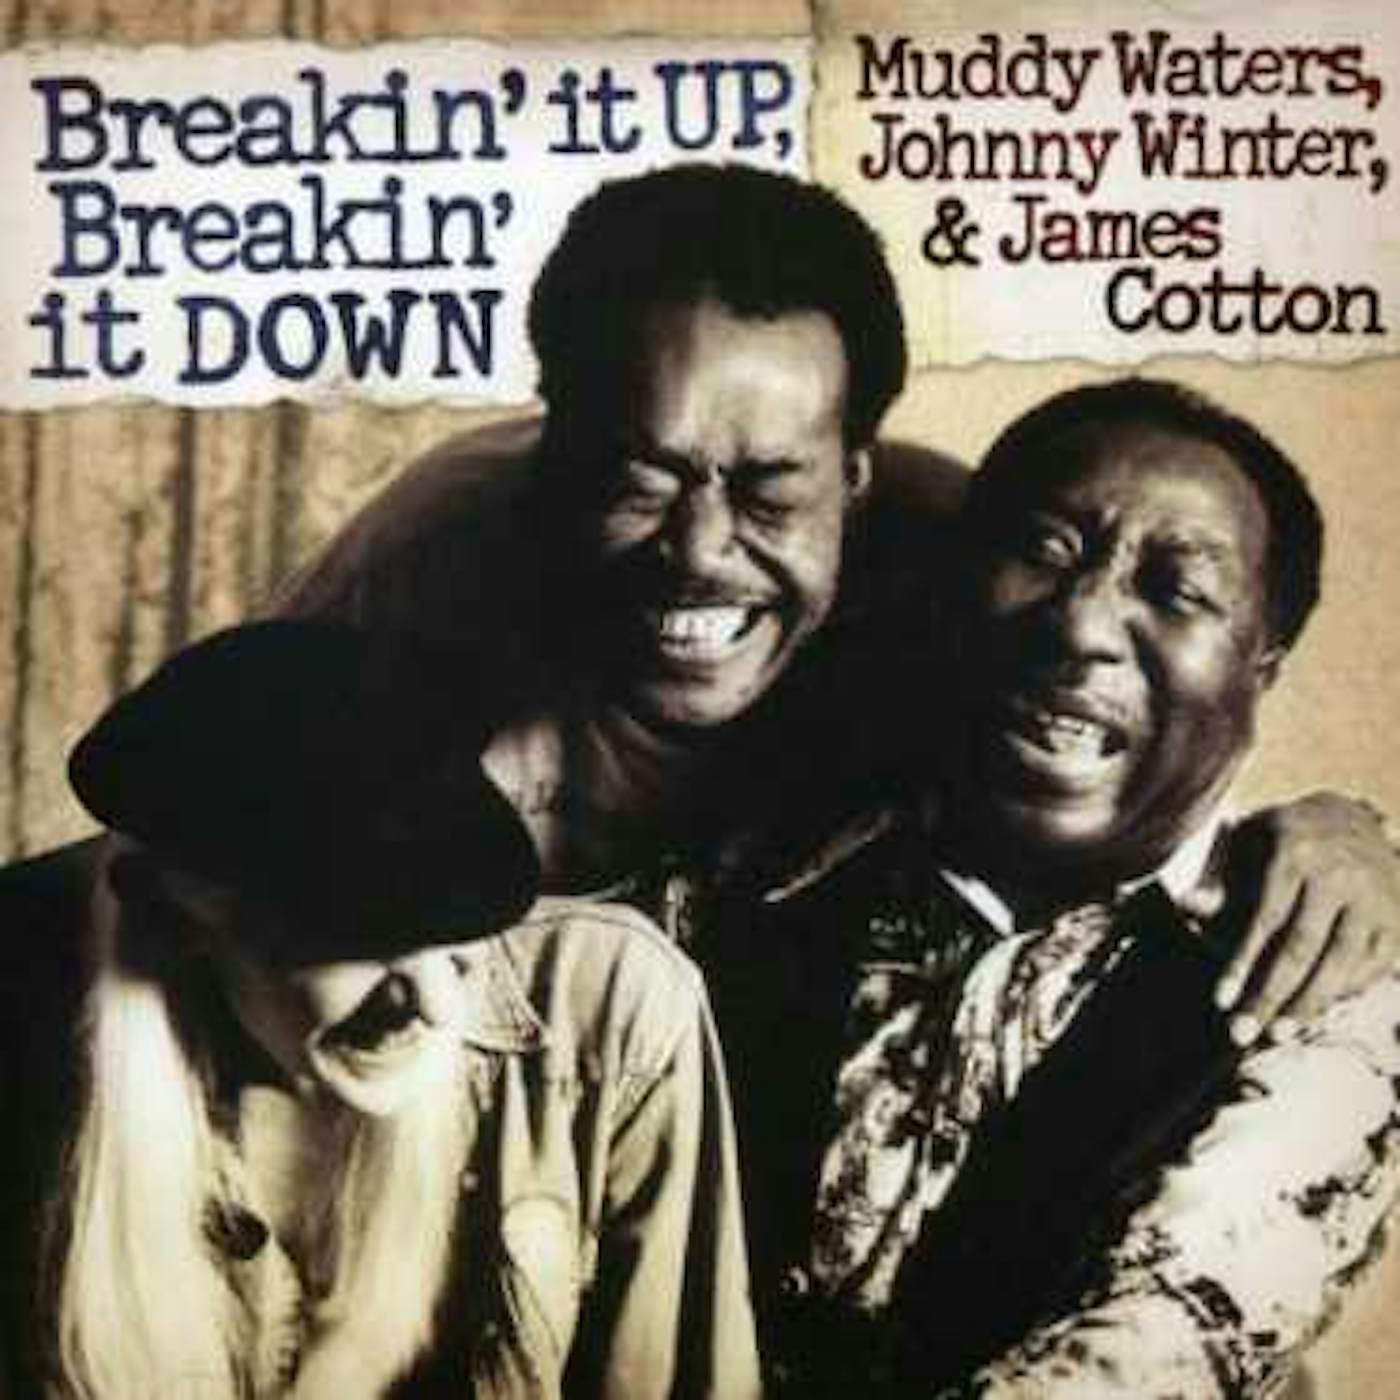 Muddy Waters BREAKIN IT UP: BREAKIN IT DOWN CD